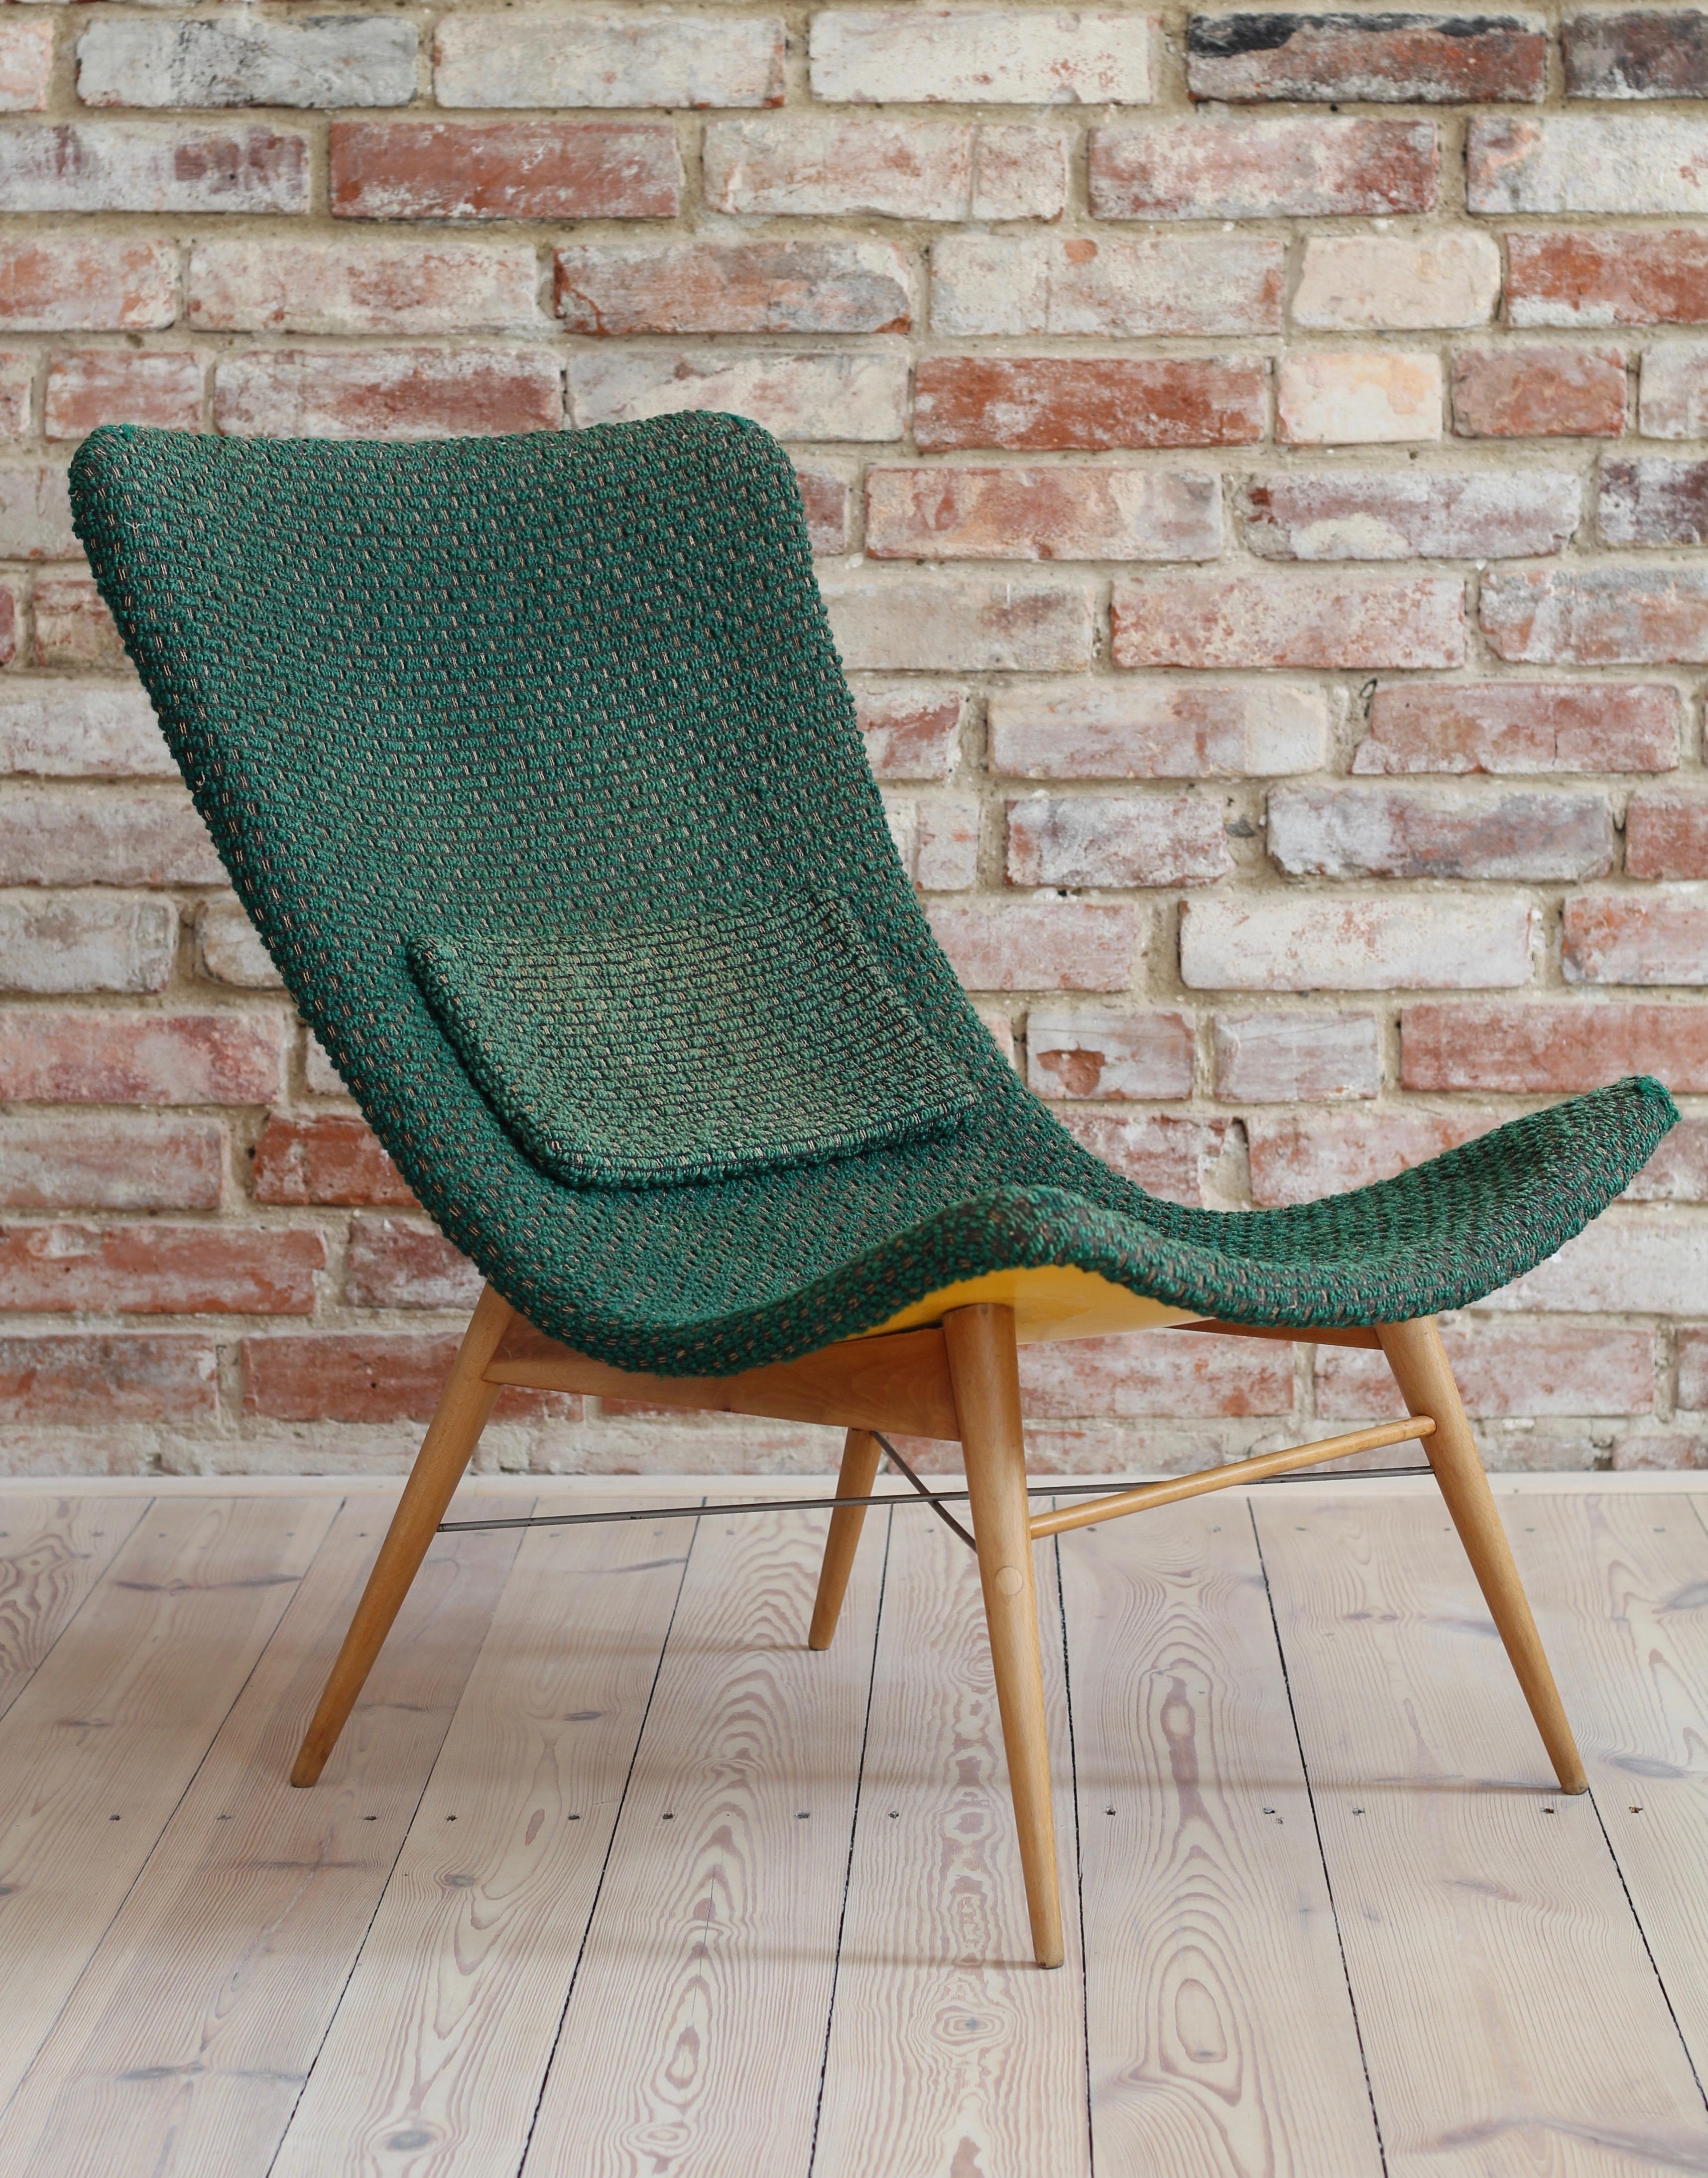 Fiberglass Lounge Chair by Miroslav Navratil, 1959, Original Condition